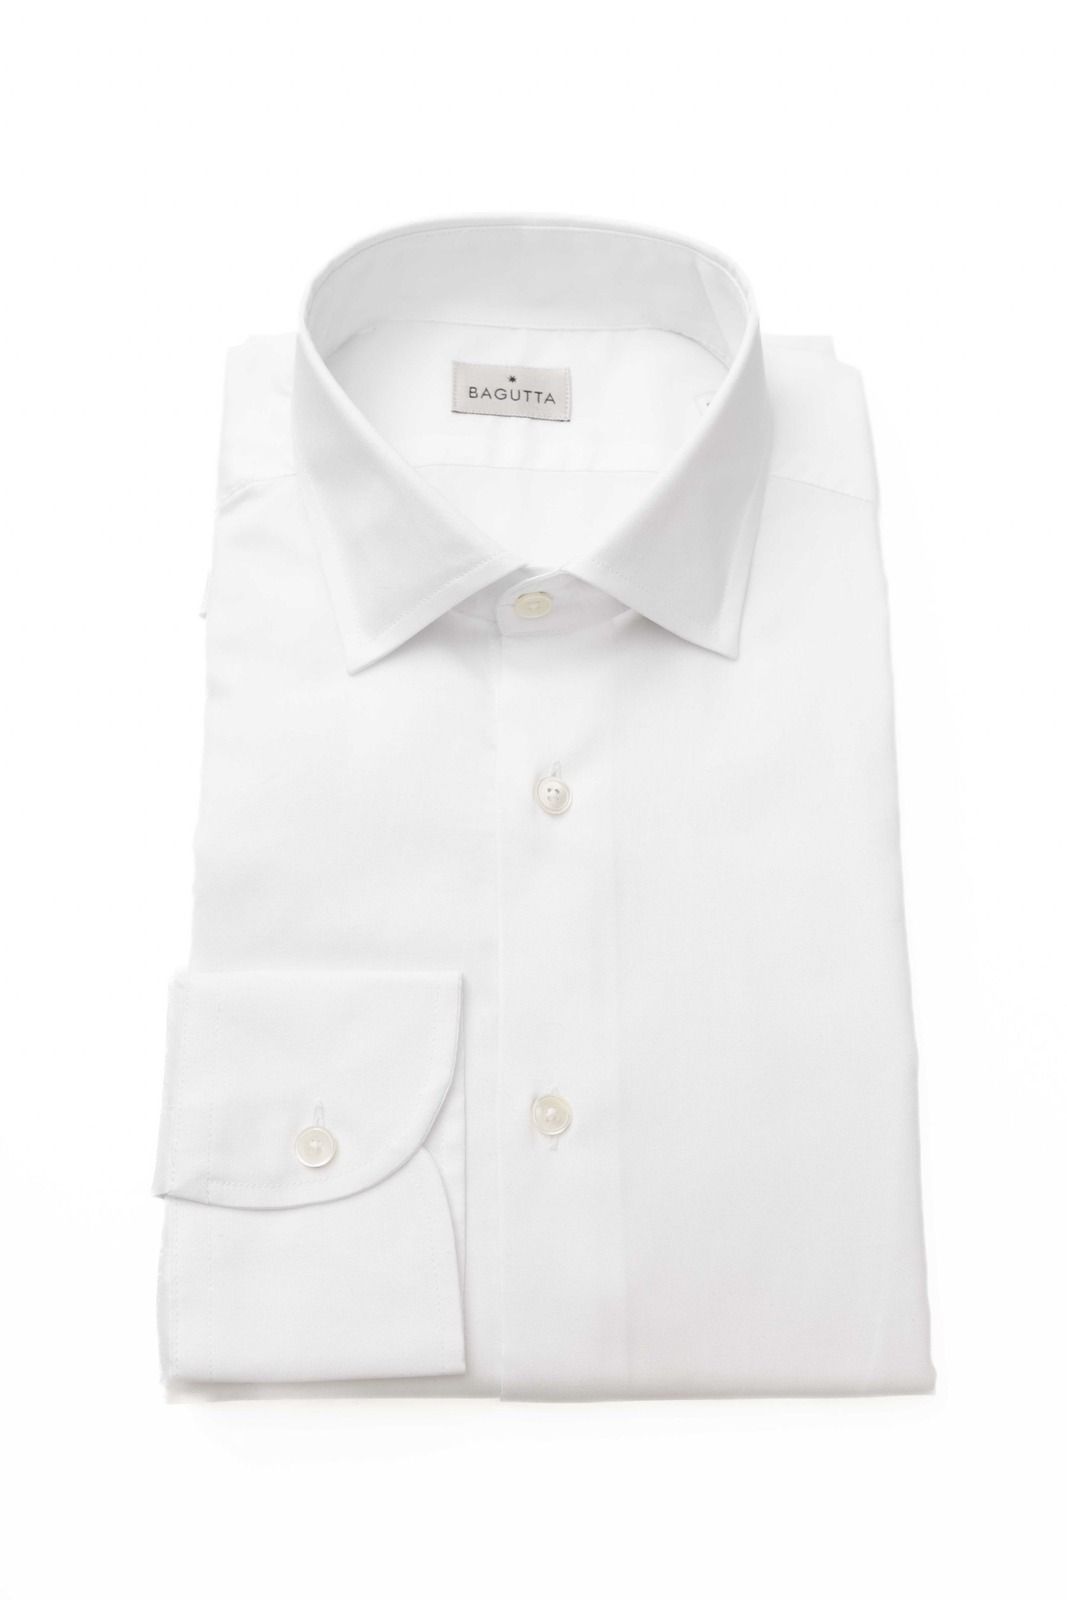 Košile Bagutta 12509 LEO EBL Barva: bílá, Velikost: 43